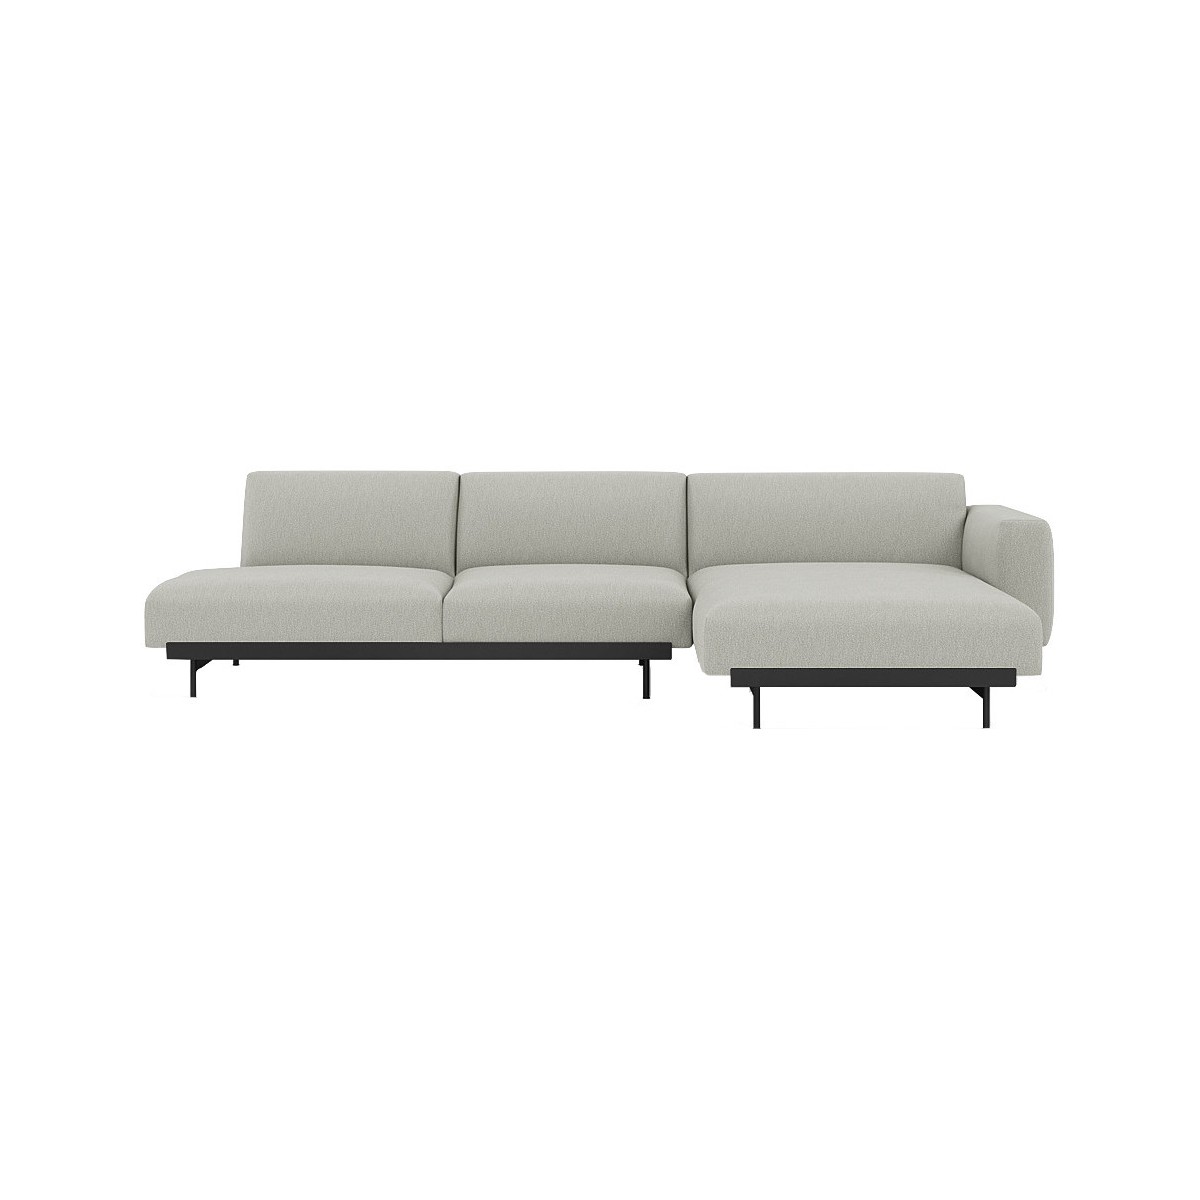 Clay 12 / black – In Situ 3-seater sofa / configuration 8 – 297 x 169 cm